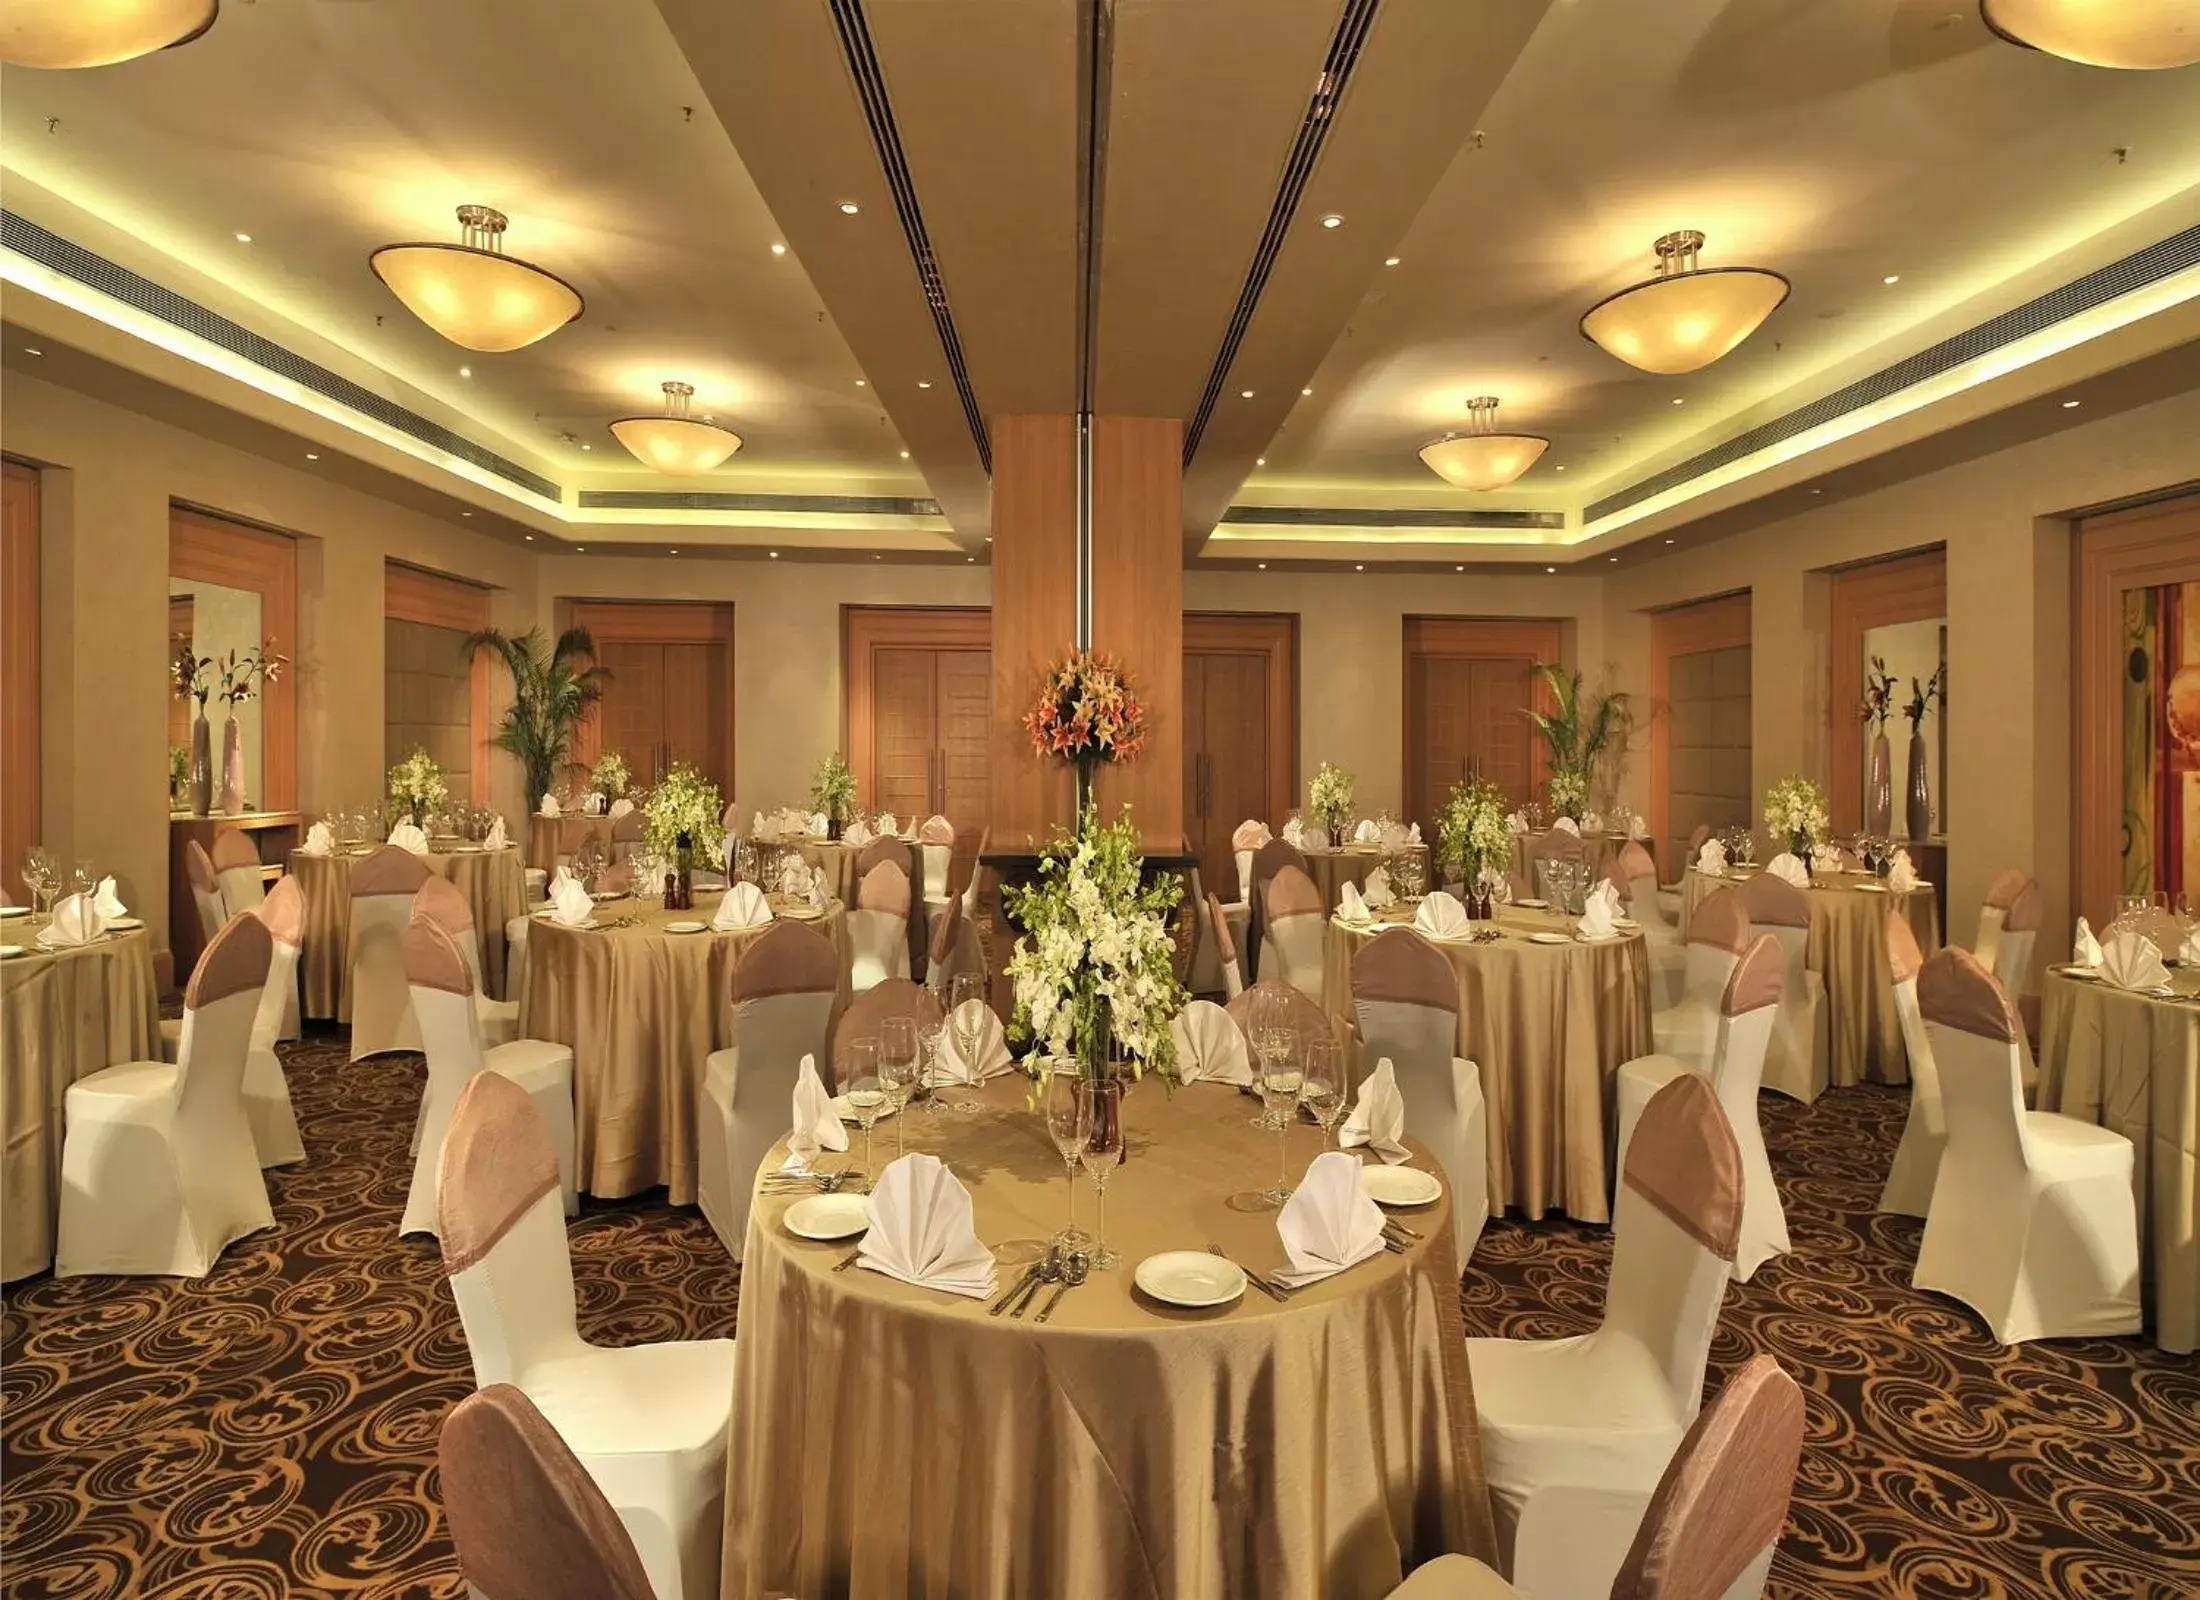 Banquet/Function facilities, Banquet Facilities in Park Plaza Faridabad